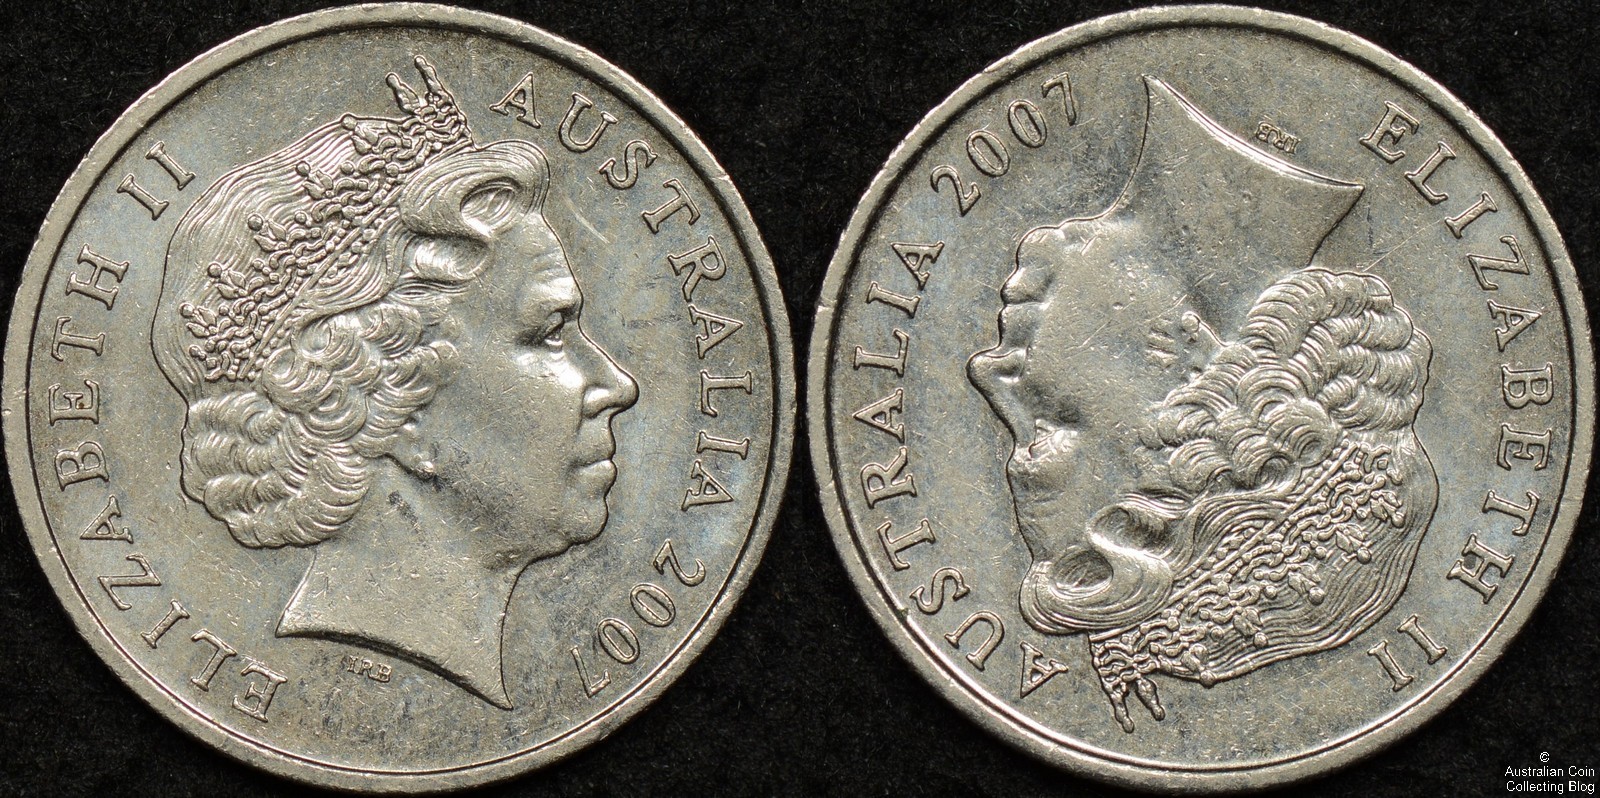 2007 Double Headed Australian 5 Cent Coin - The Australian Coin